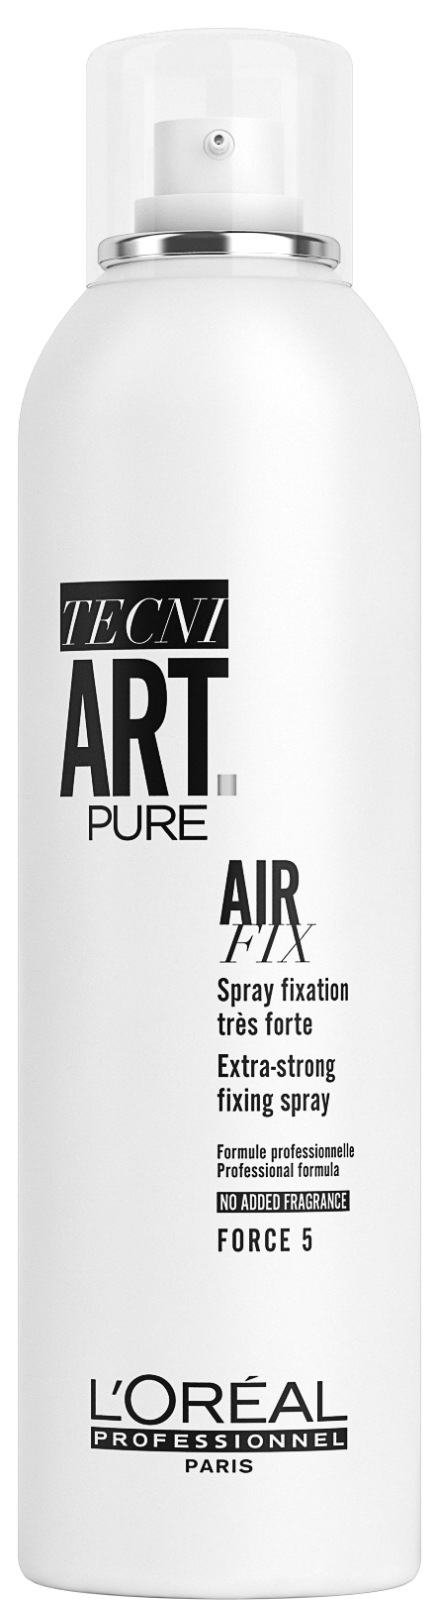 Air Pure Fix-HAIR PRODUCT-Hairsense